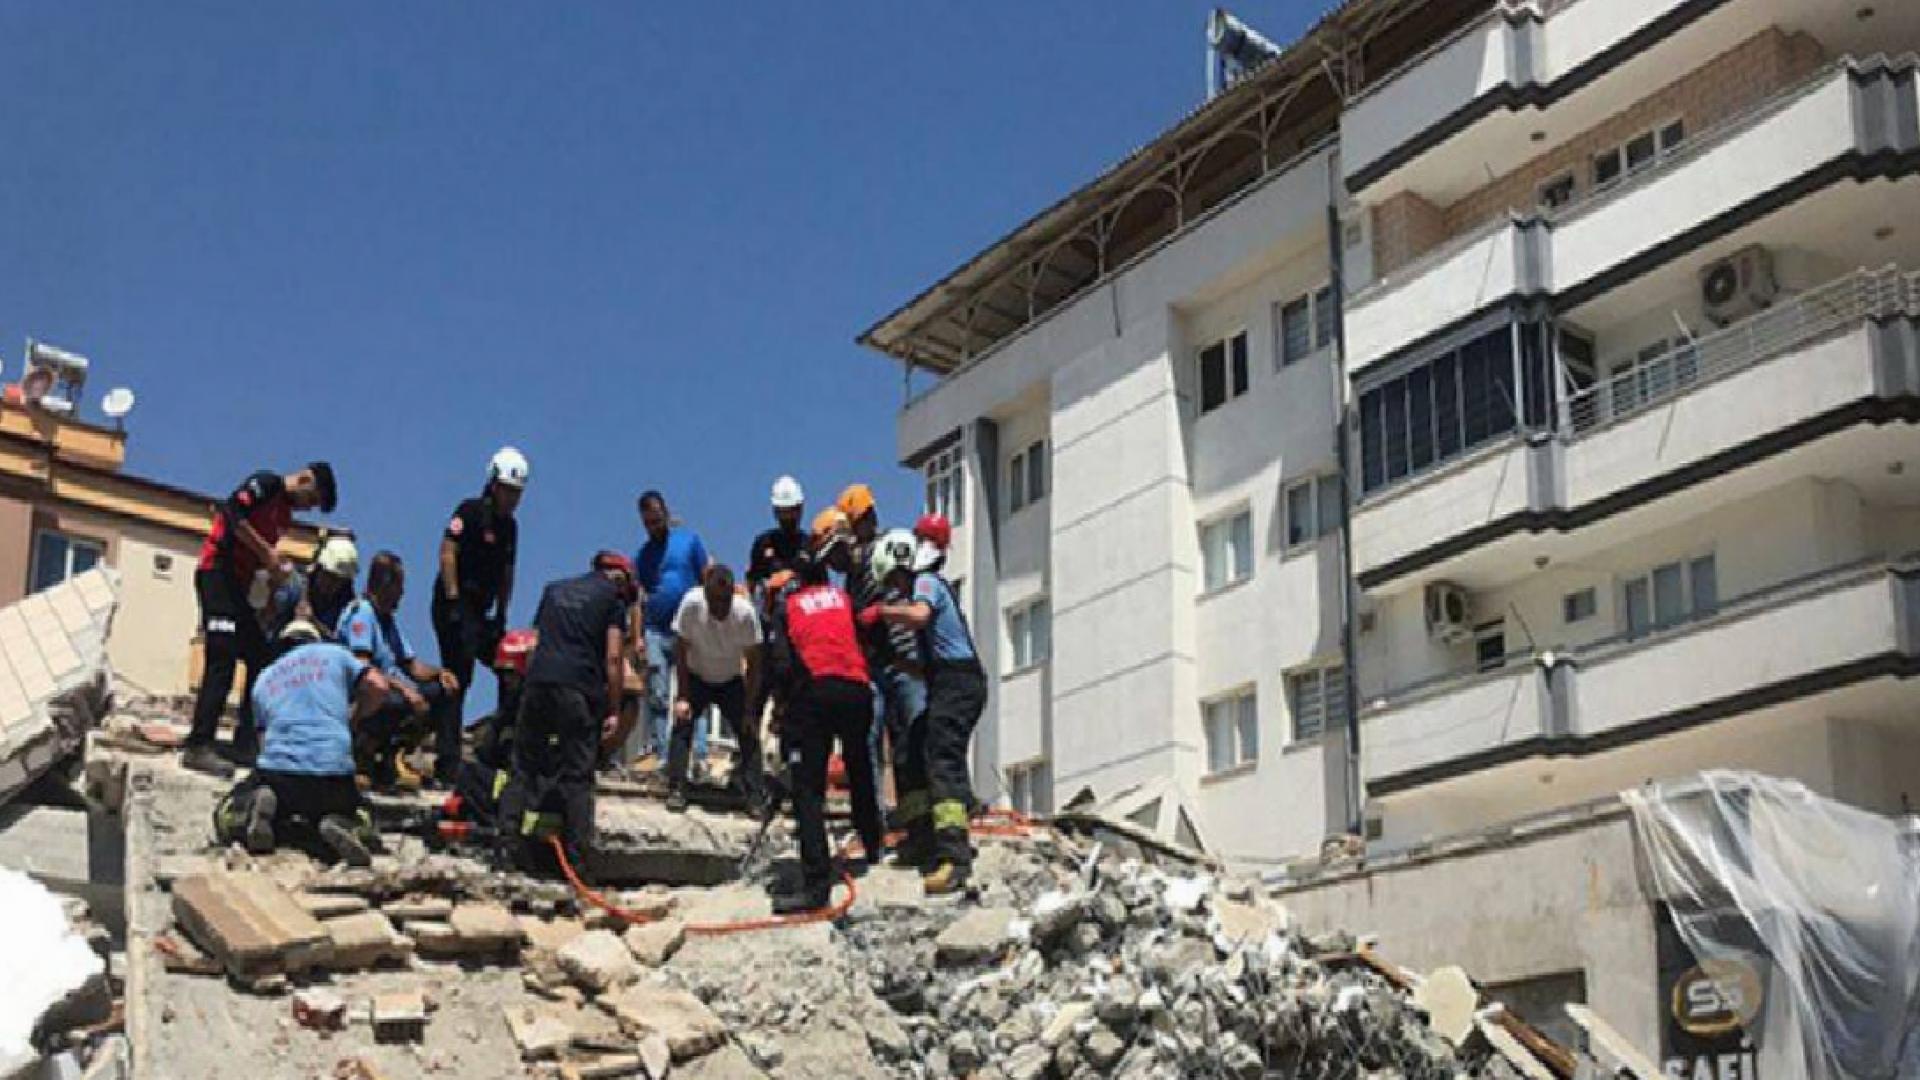 Gaziantep'te yıkım sırasında enkaz altında kalan Şahin Boz yaşamını kaybetti